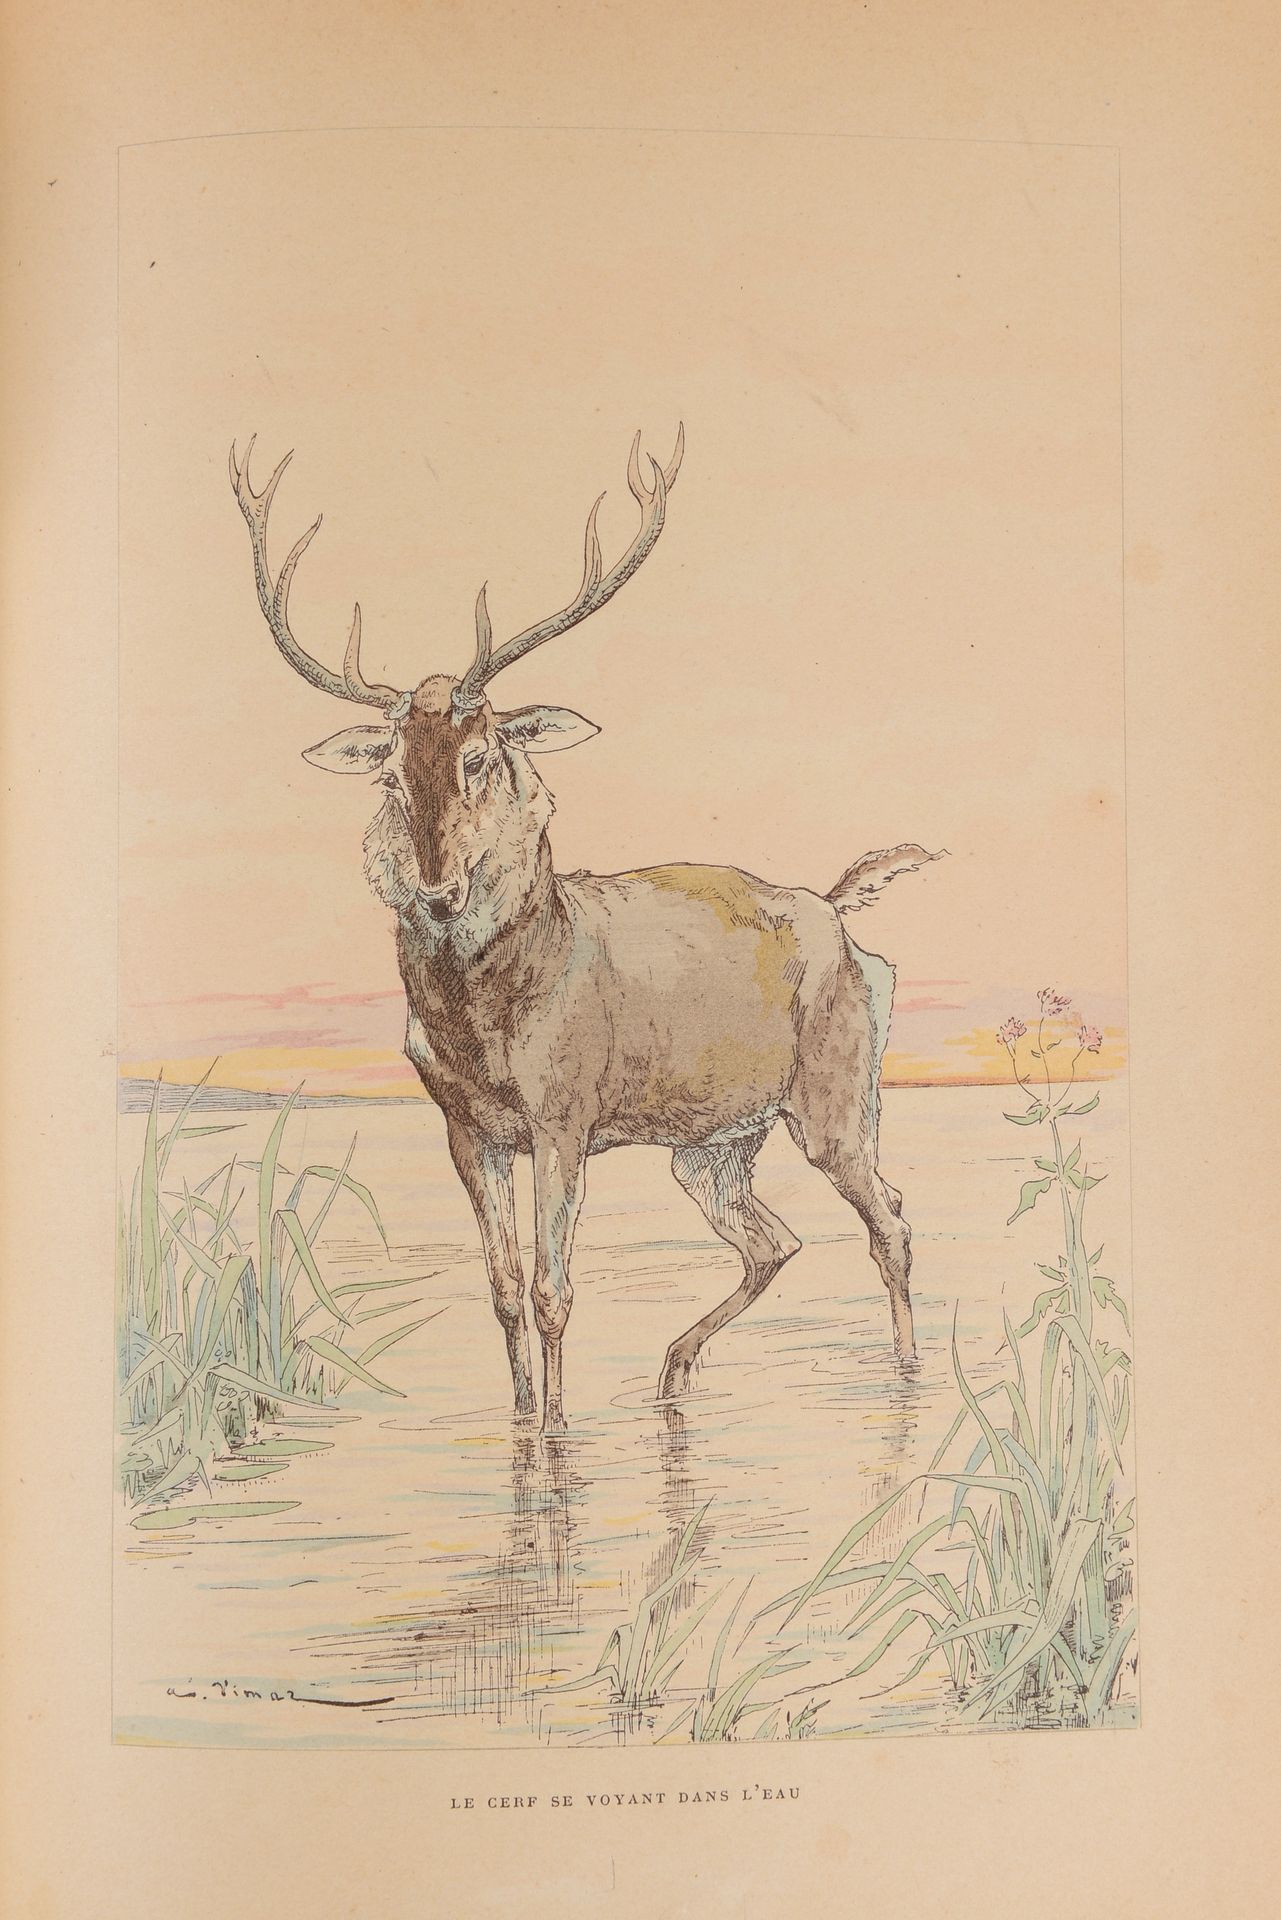 Null 拉方丹的寓言》，维玛尔的非常漂亮的插图（一张插图的照片）图尔，1897年。用半胶合剂装订，书脊有五条肋。